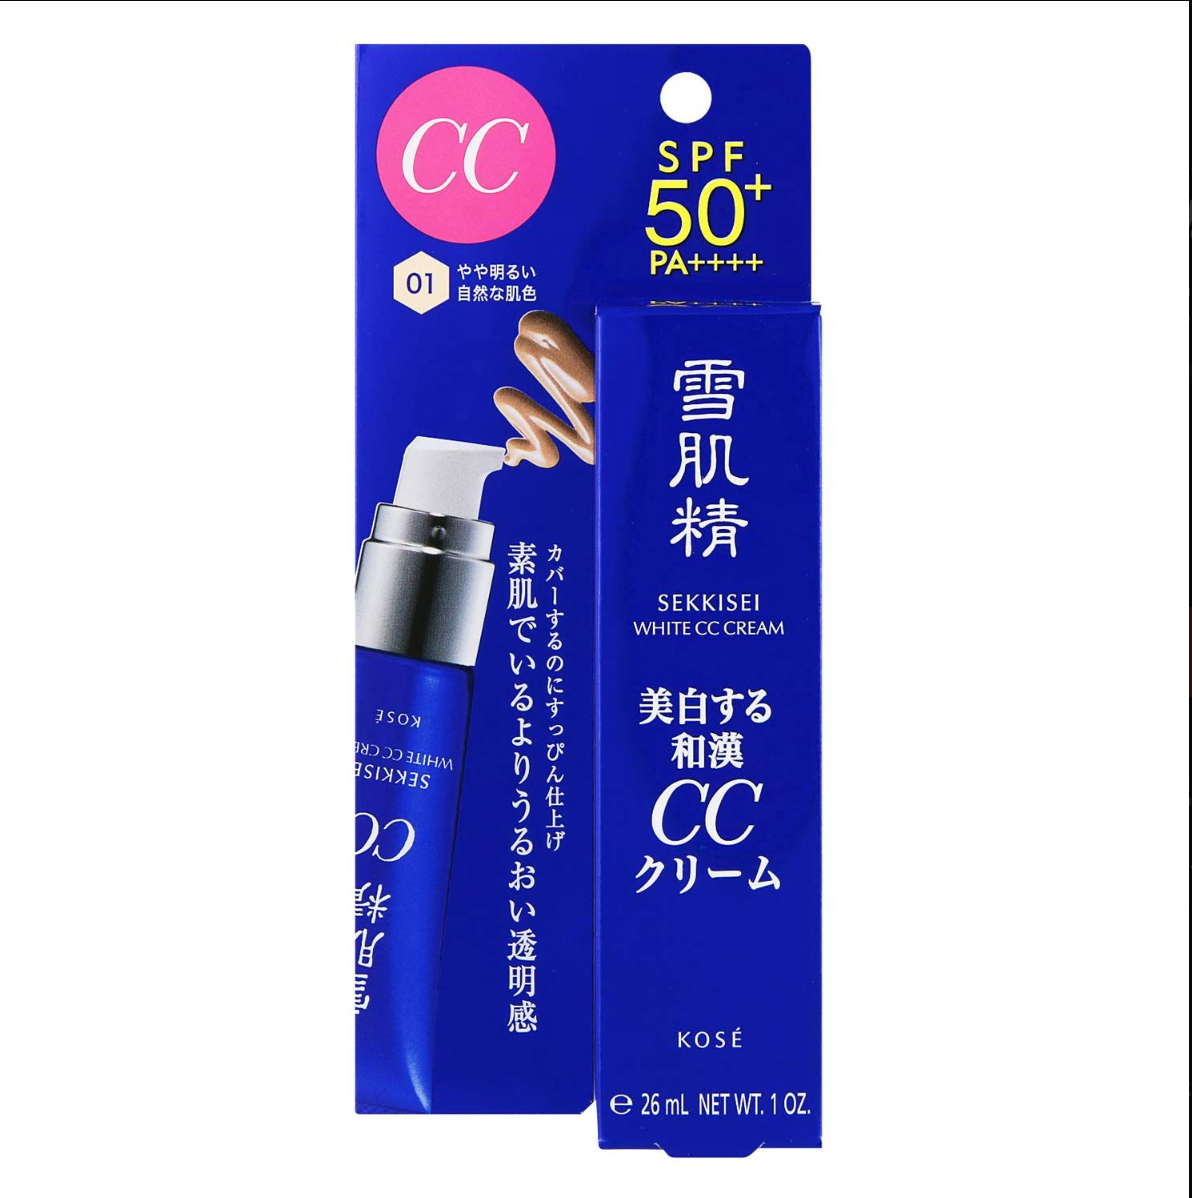 Kosé Sekkisei White Cc Cream SPF50+ PA++++ Light Ochre 01 26ml - Made In Japan